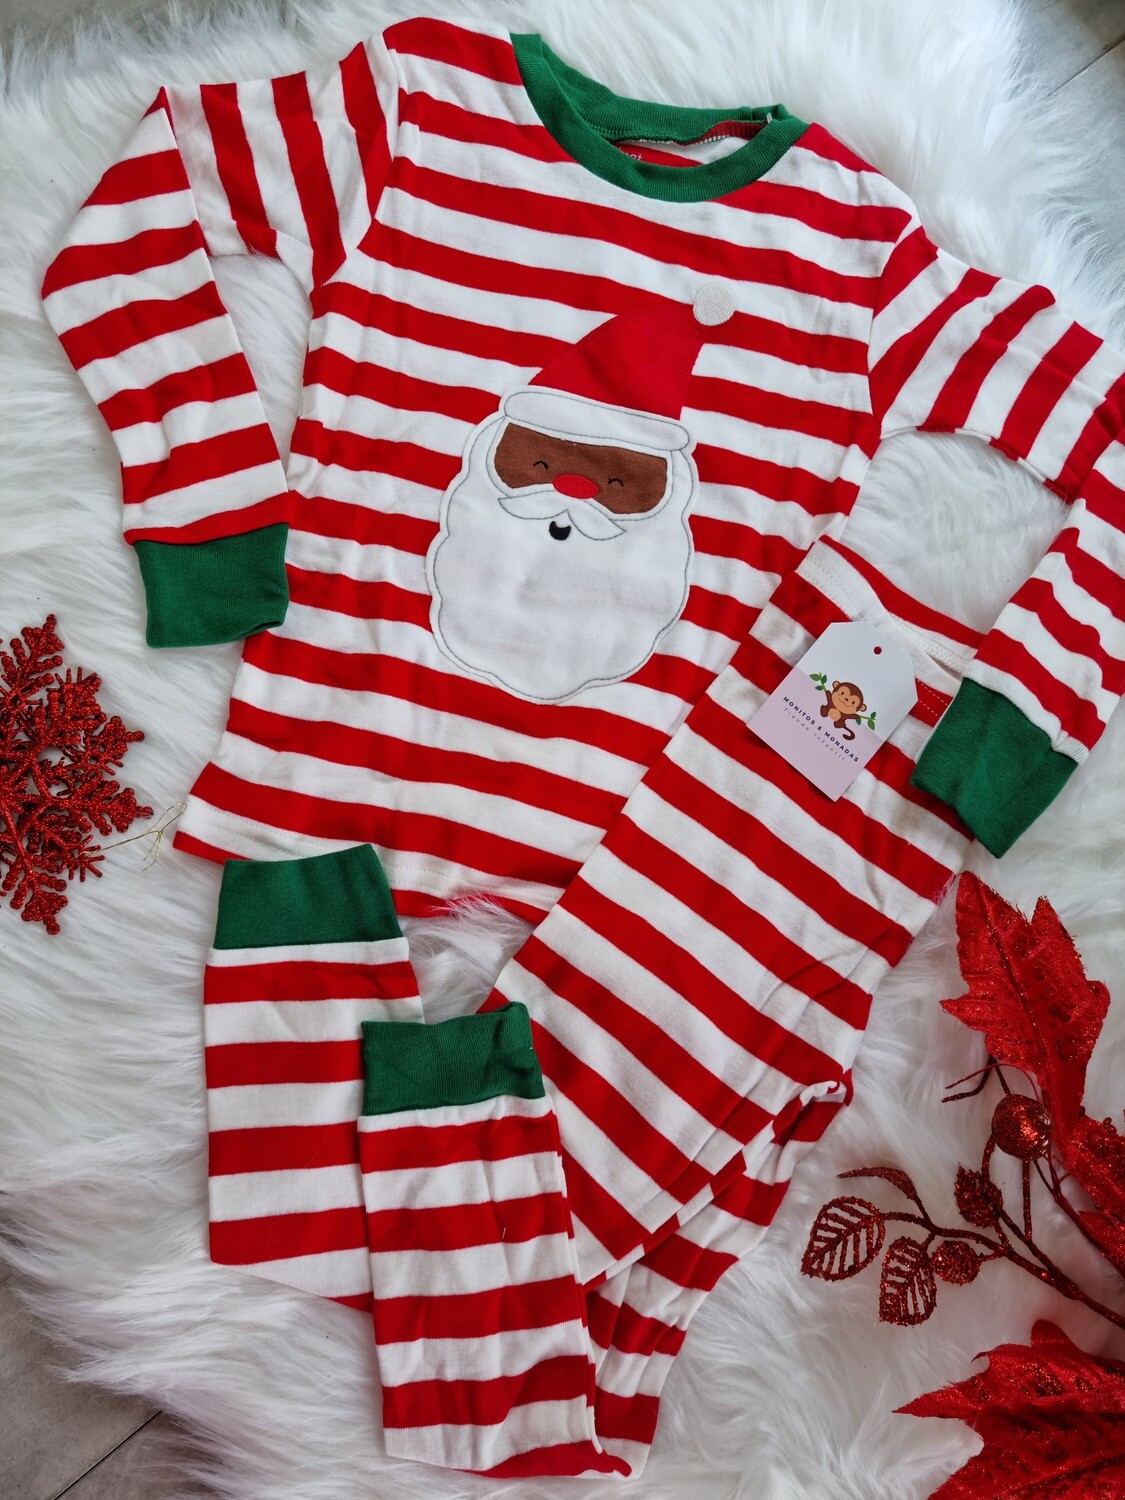 Pijama navideña Papá Noel, busito y pantalón rayas rojas, 3T y 4T